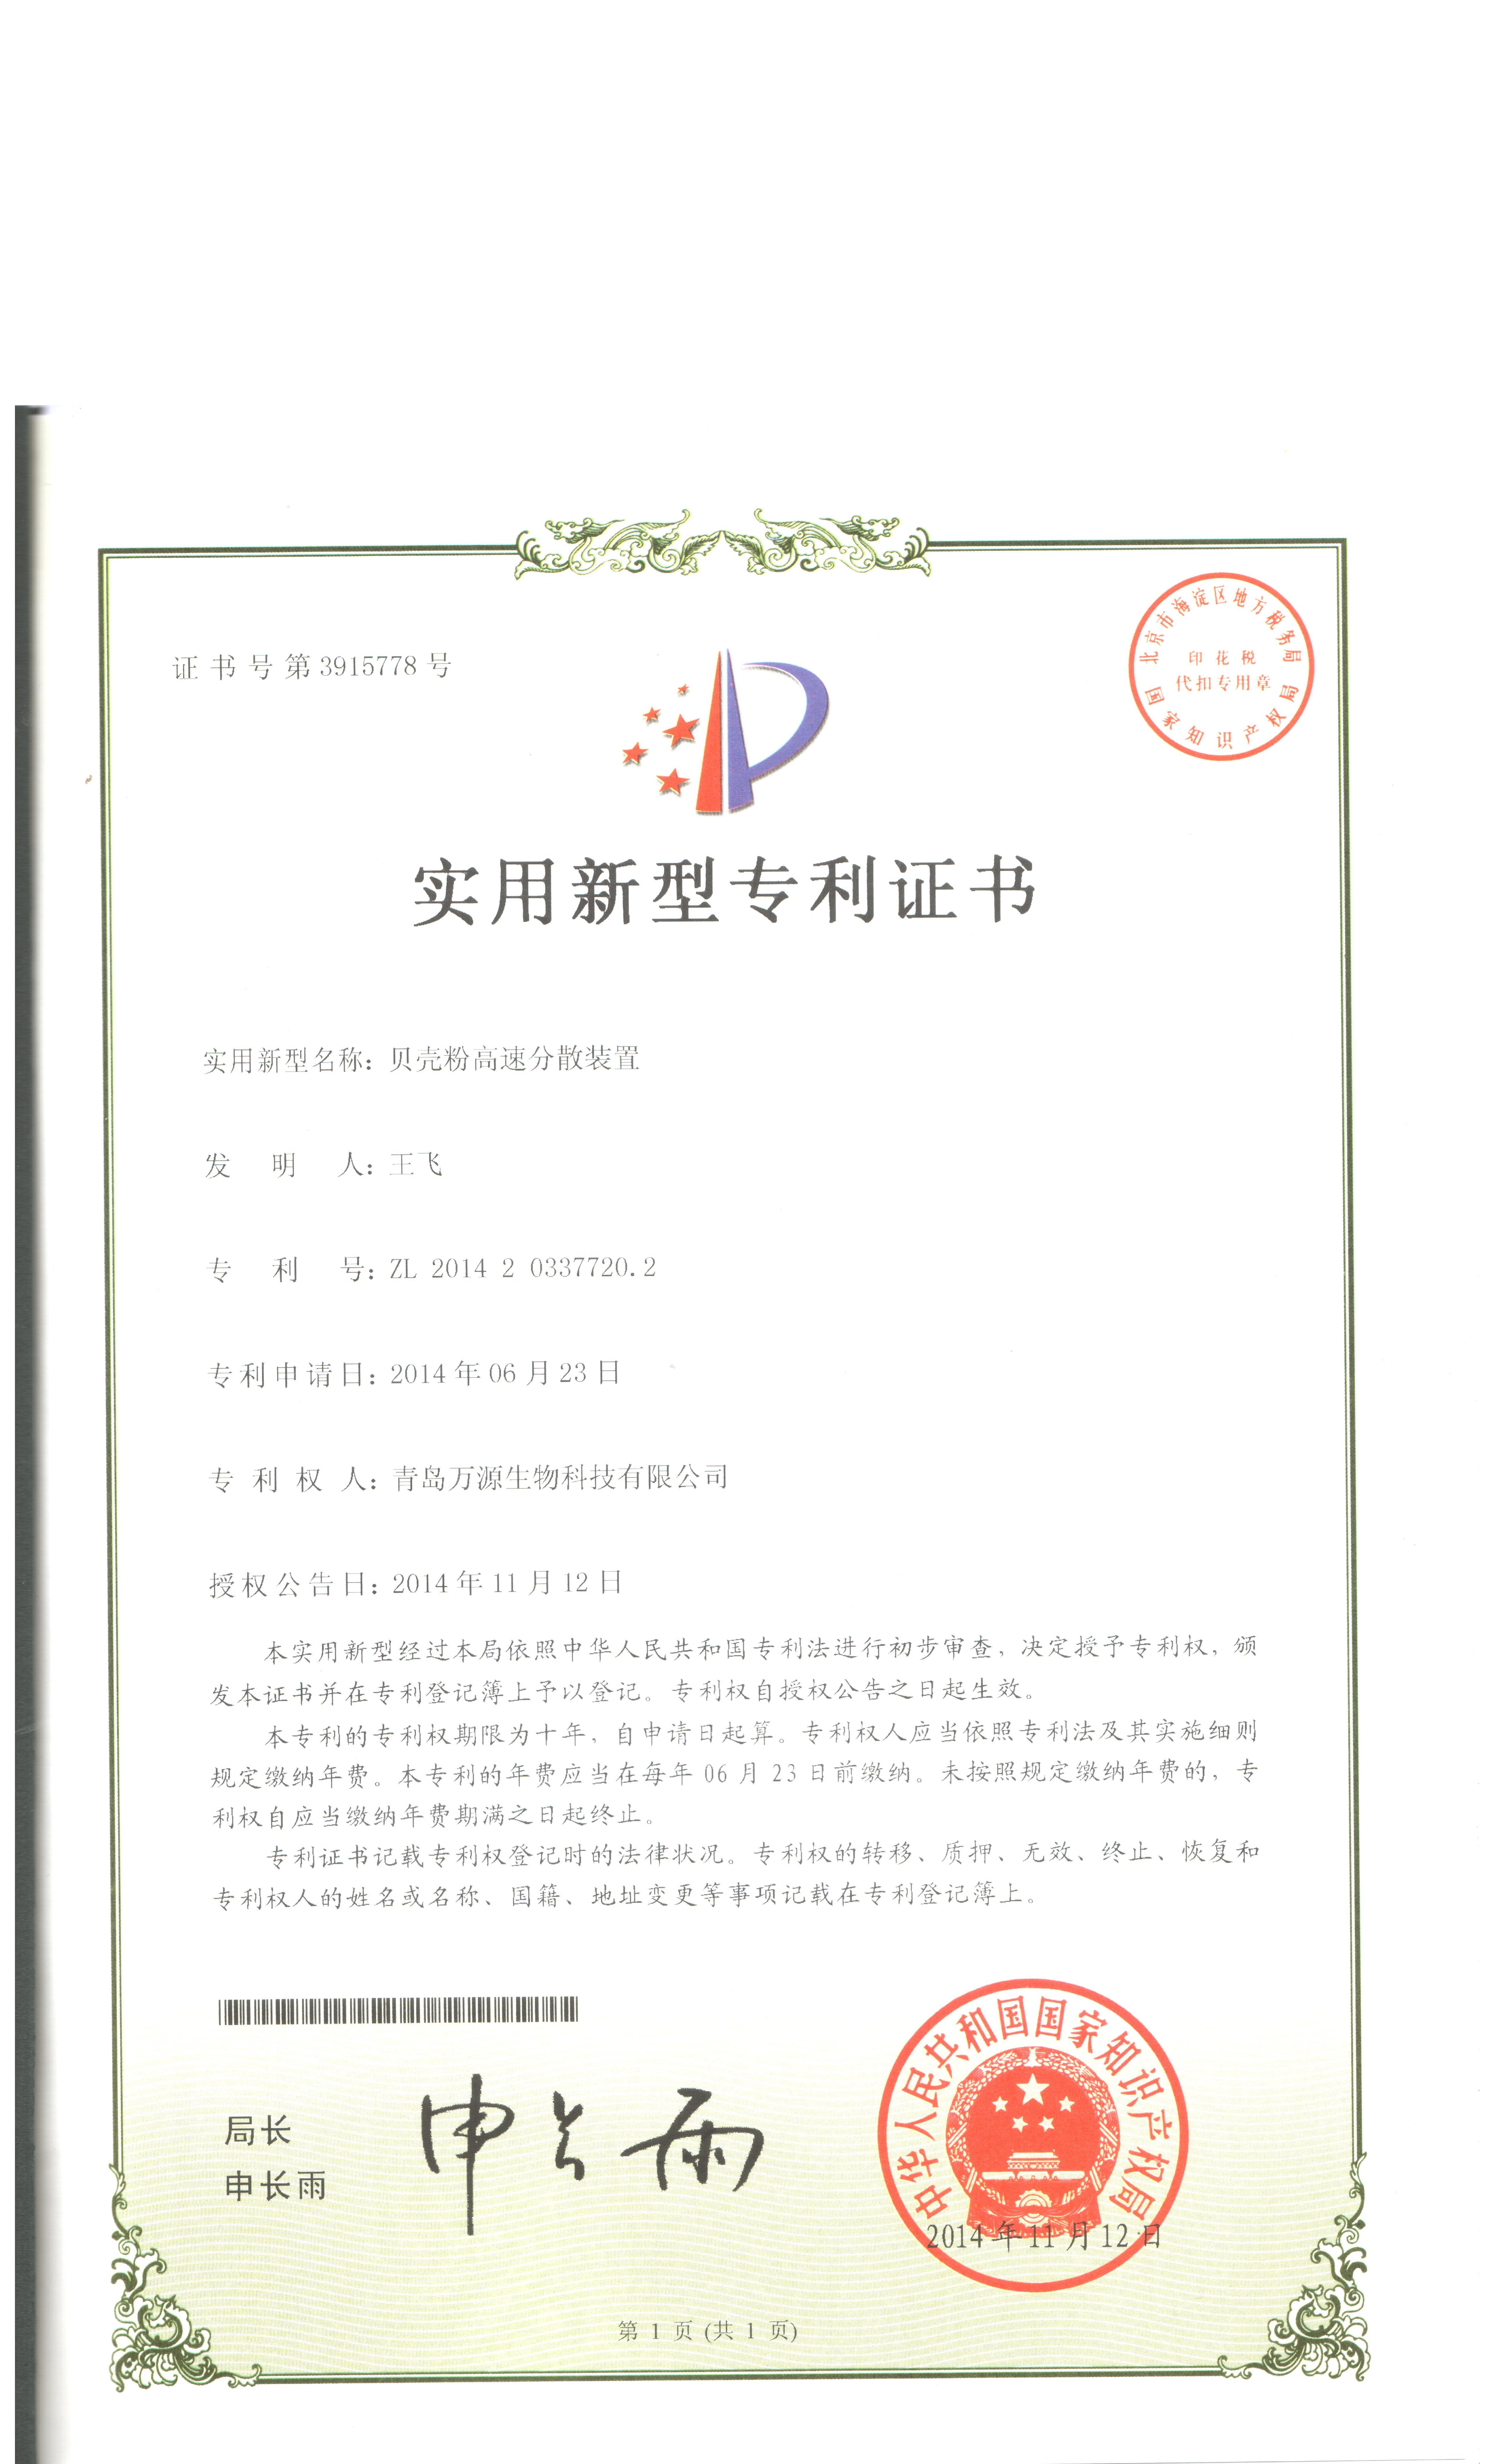 2014年11月12日獲得專利證書分殼粉高速分散裝置